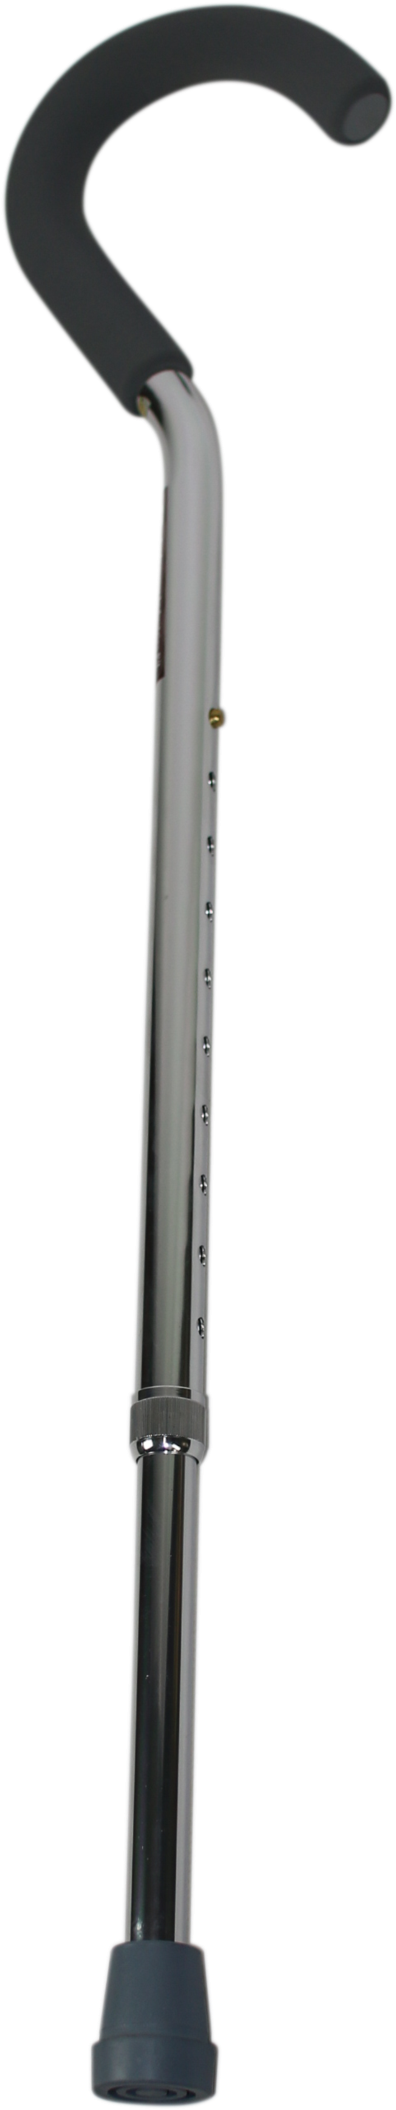 Adjustable Metal Walking Stick PNG